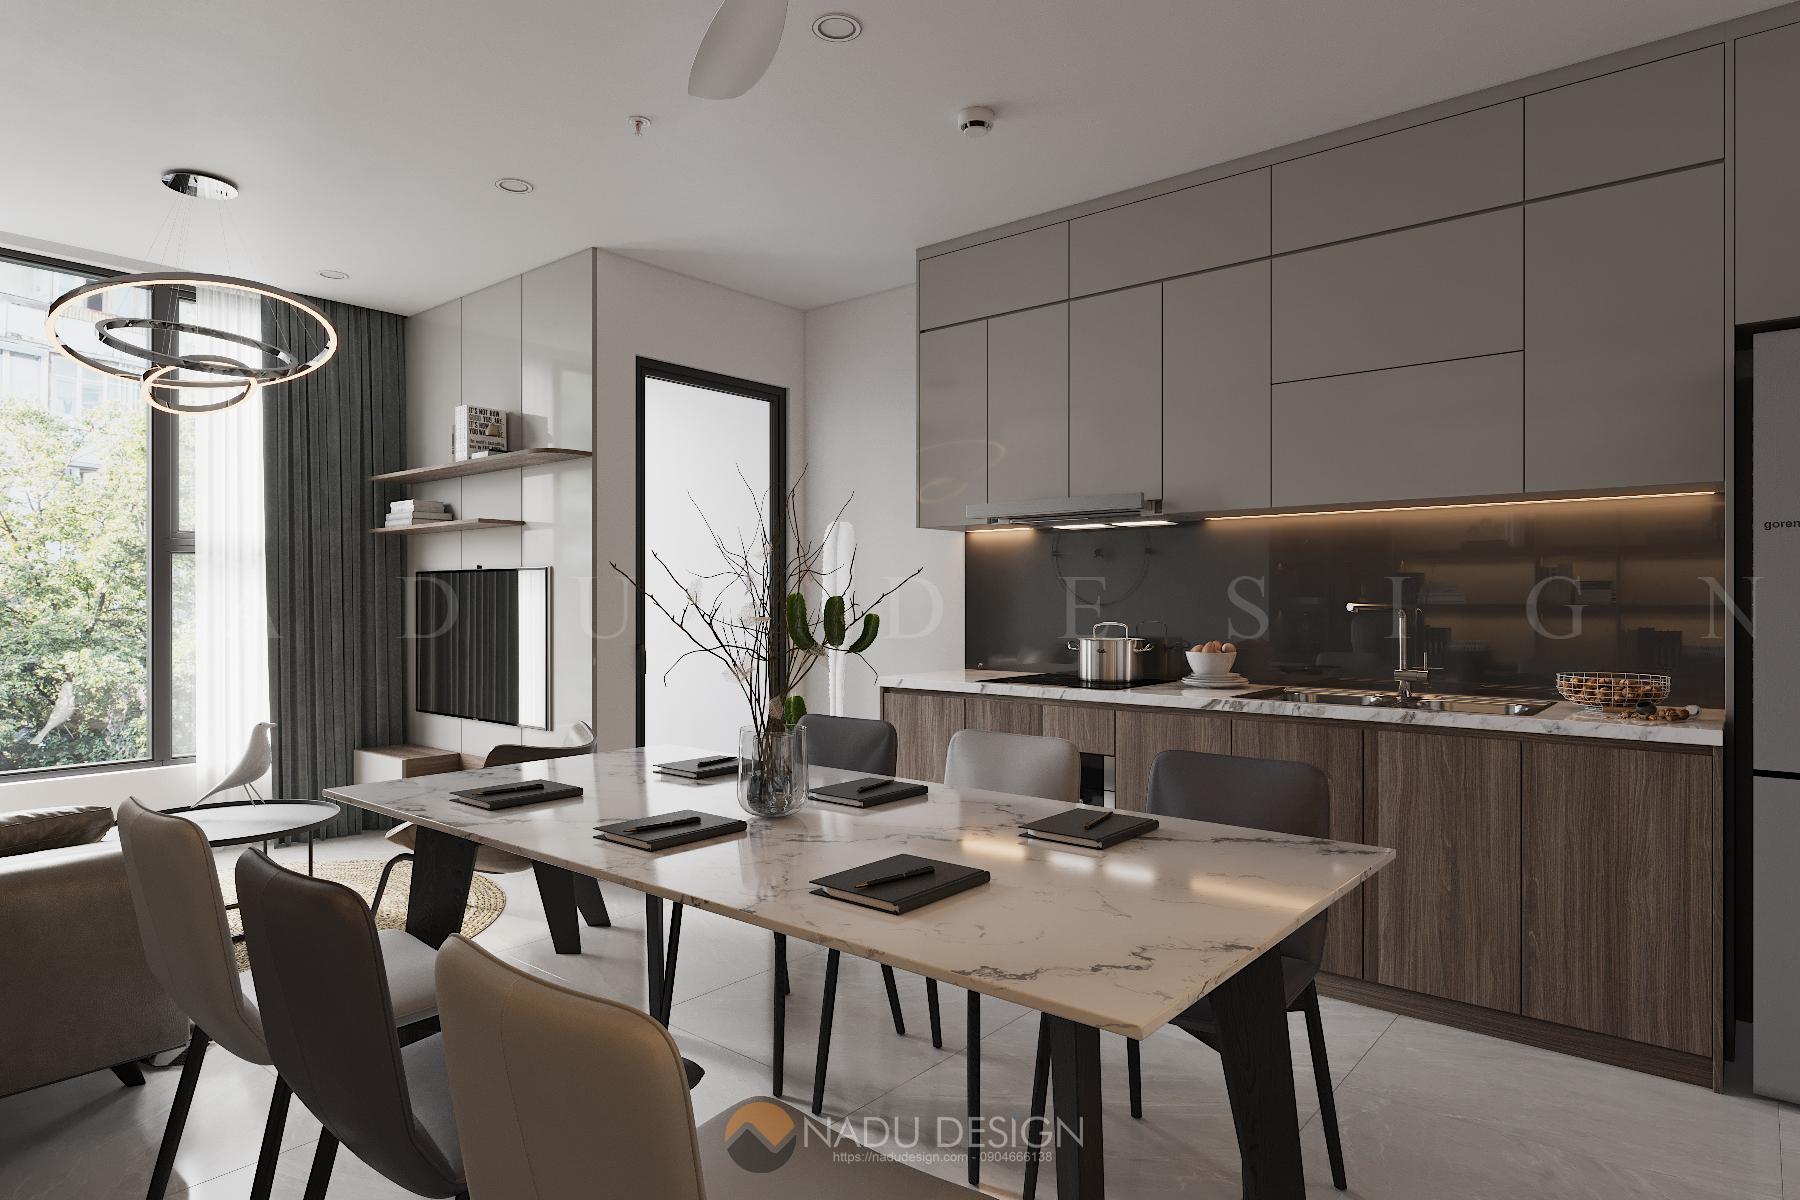 Cùng đón xem các thiết kế phòng bếp với không gian nhỏ xinh sẽ đem lại cho bạn sự tiện nghi và đẳng cấp đầy phong cách với màu sắc và thiết kế hiện đại.